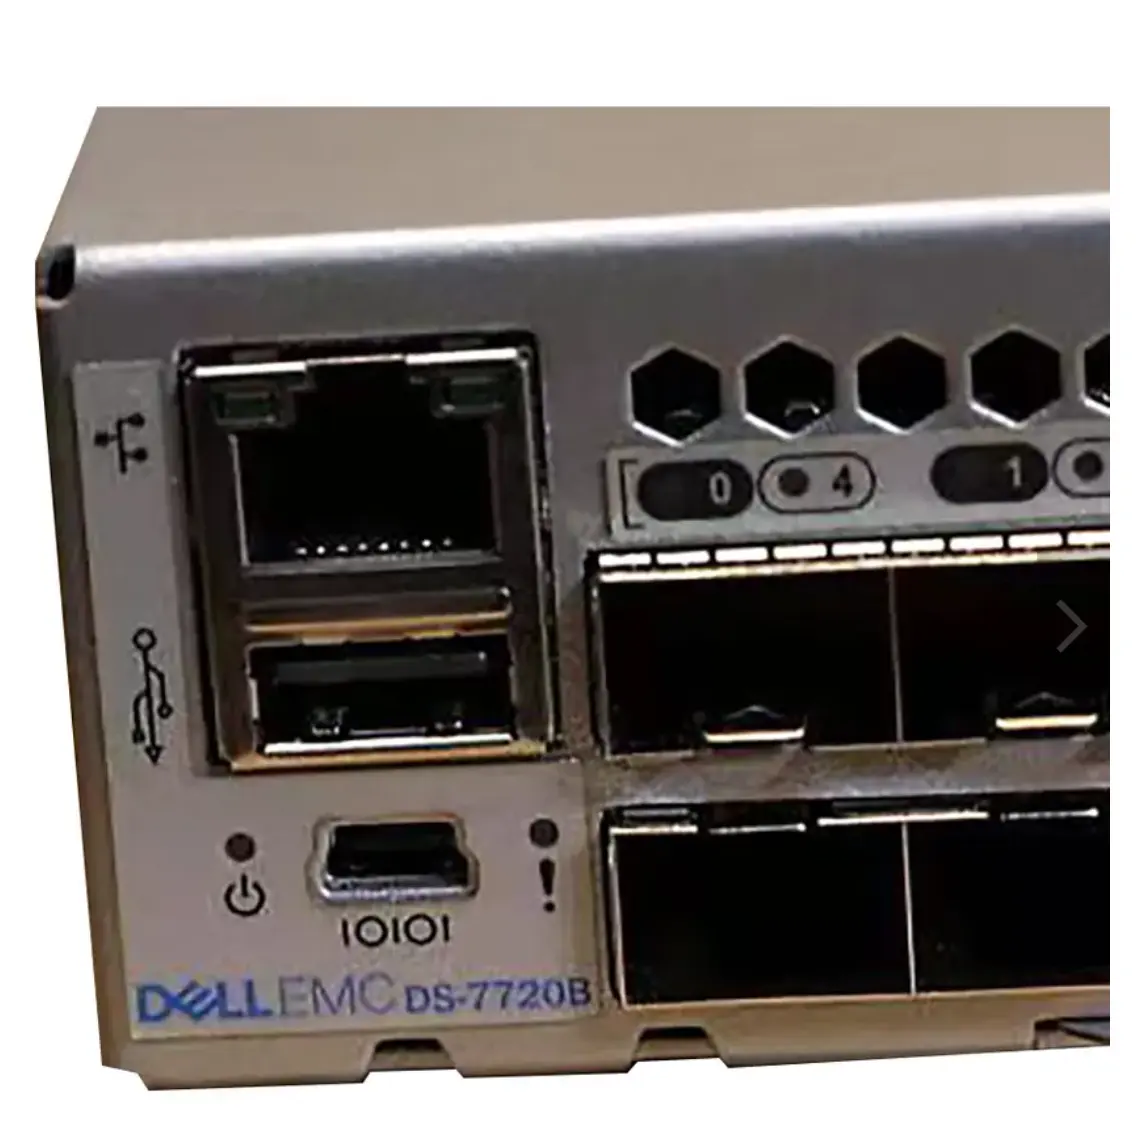 Commutateur de réseau de matériel informatique Dell EMC DS-7720 R-B en gros